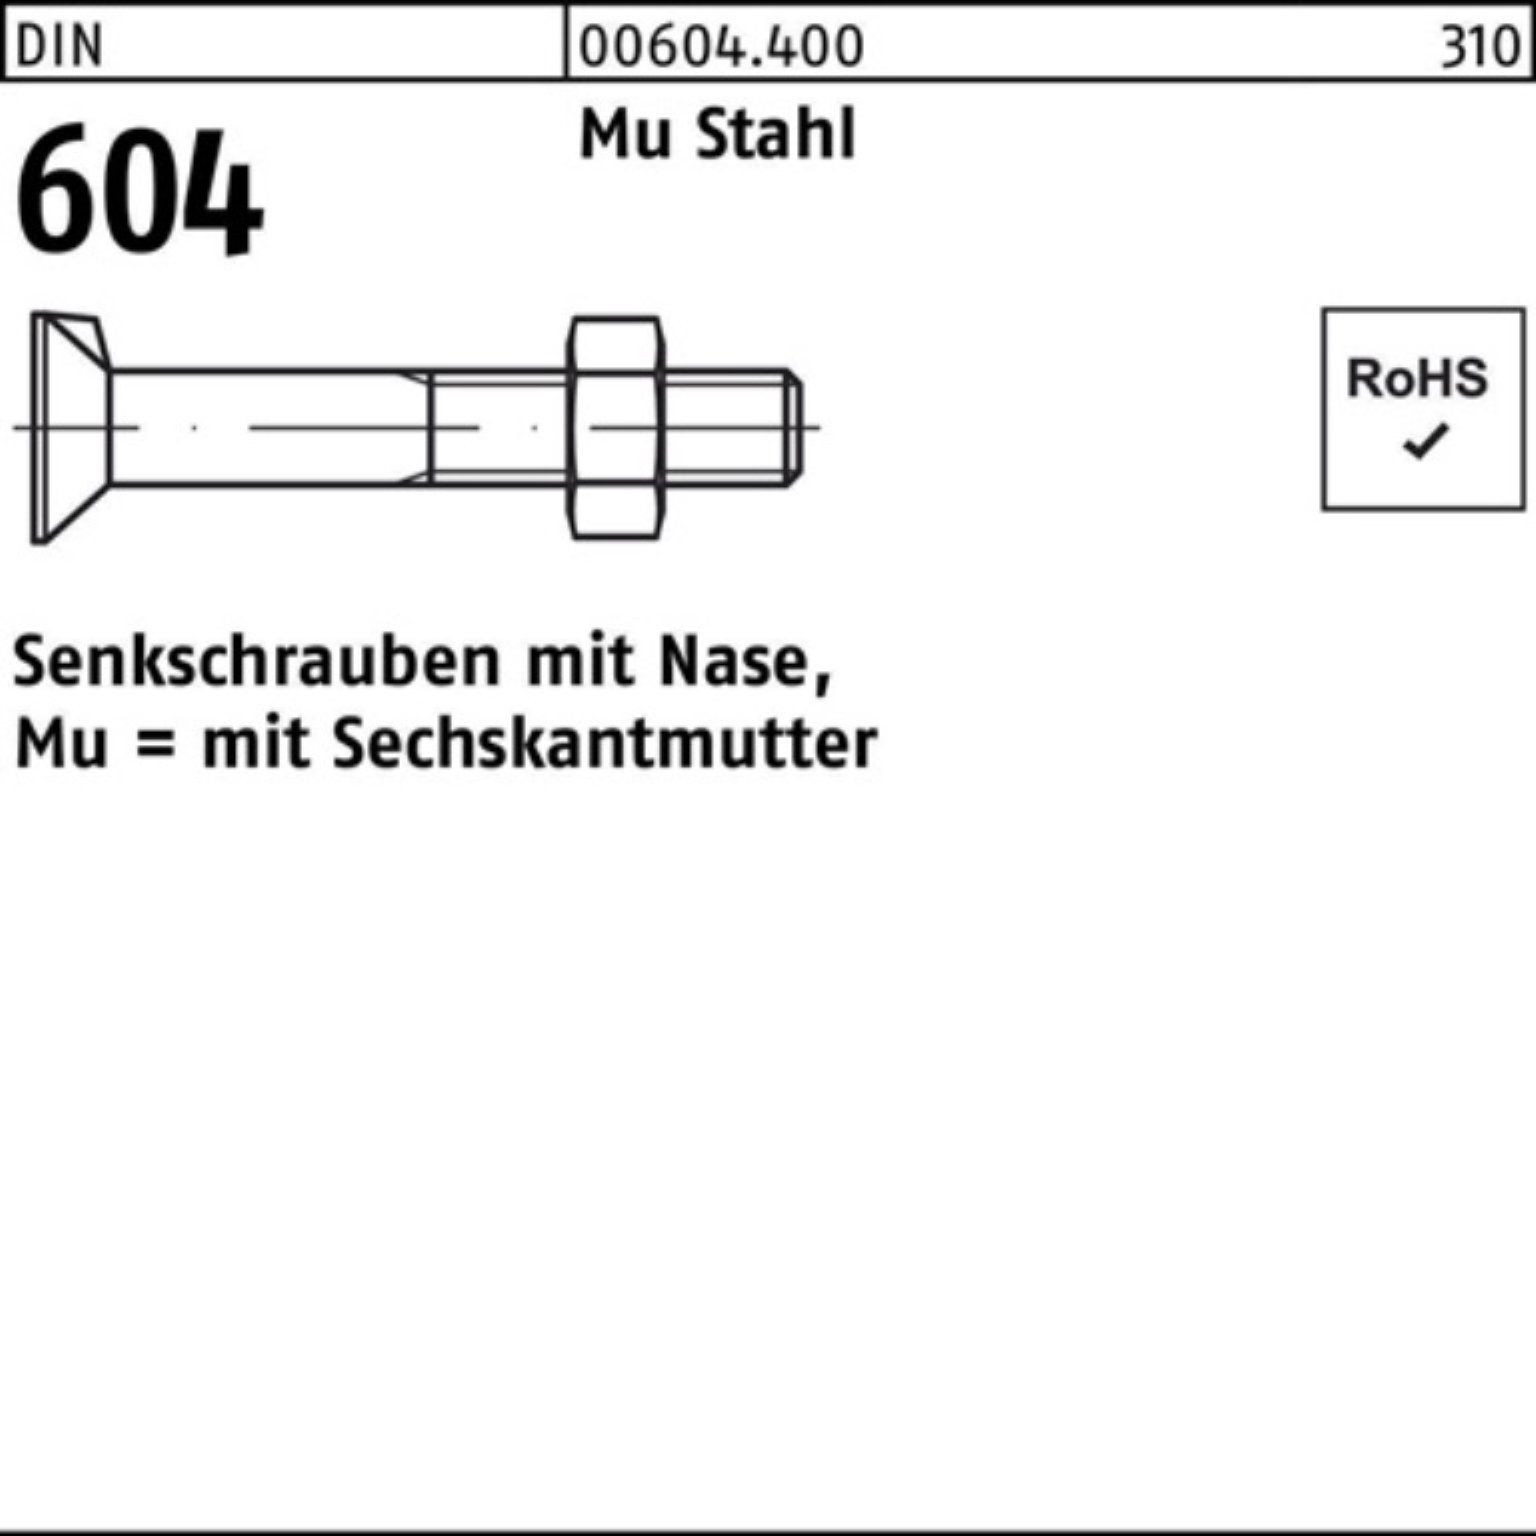 Senkschraube Stahl Senkschraube 604 4.6 45 Mu Nase/6-ktmutter Reyher 100er 1 M10x DIN Pack